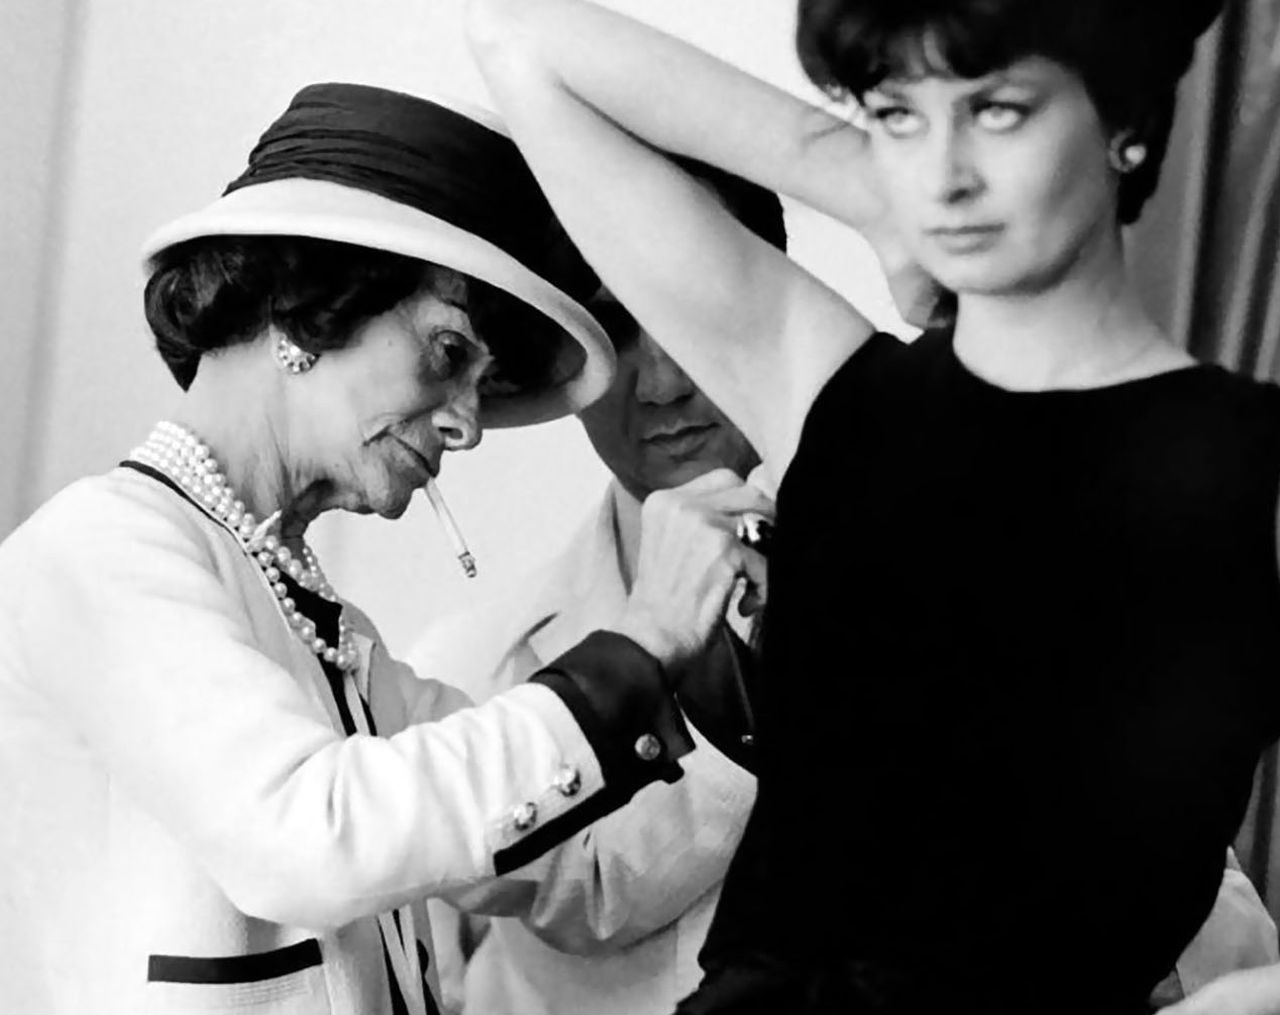 Під час Другої світової війни салон Шанель довелося закрити, але модельєр не здавалася: в 1953 році її паризький салон пережив друге відкриття, а в 1954 був офіційно зареєстрований модний Будинок Chanel